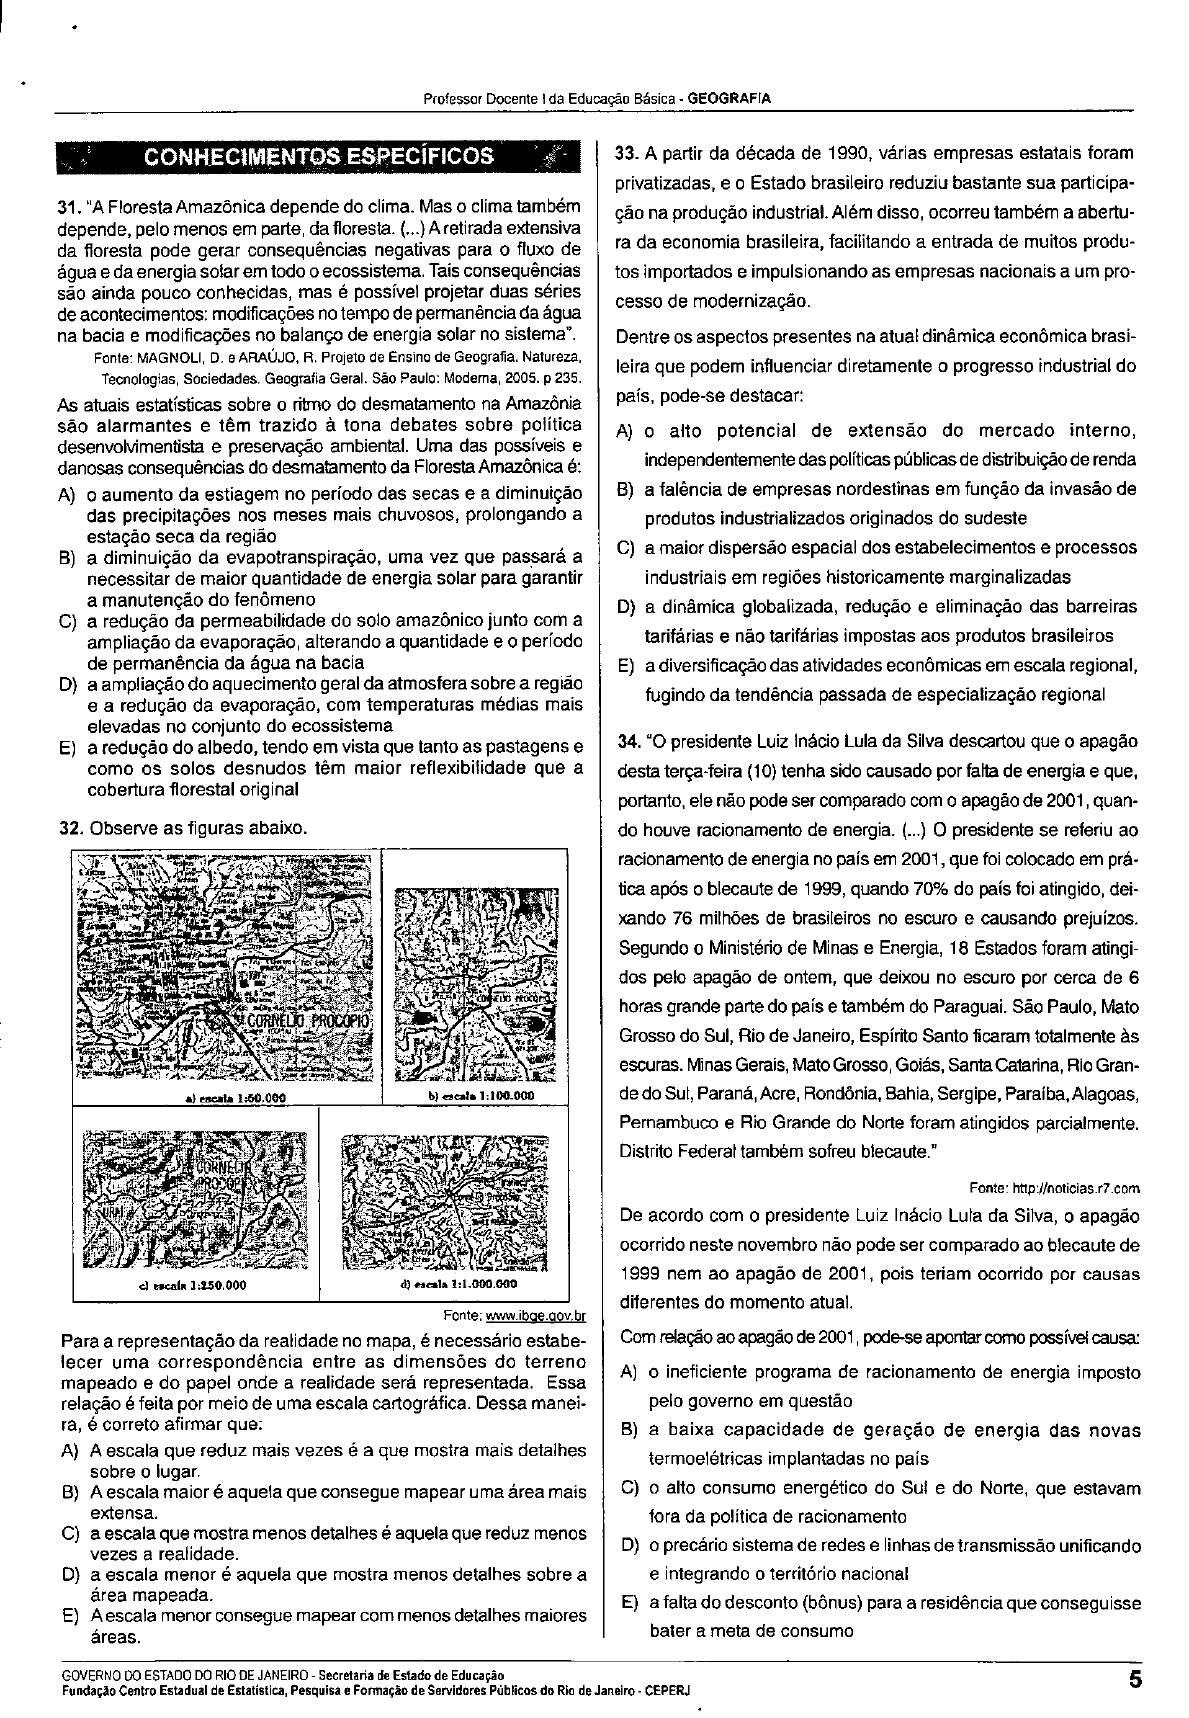 Edital Pregão 178-2009 aquisição de livros.pdf - dirap - Cefet-RJ